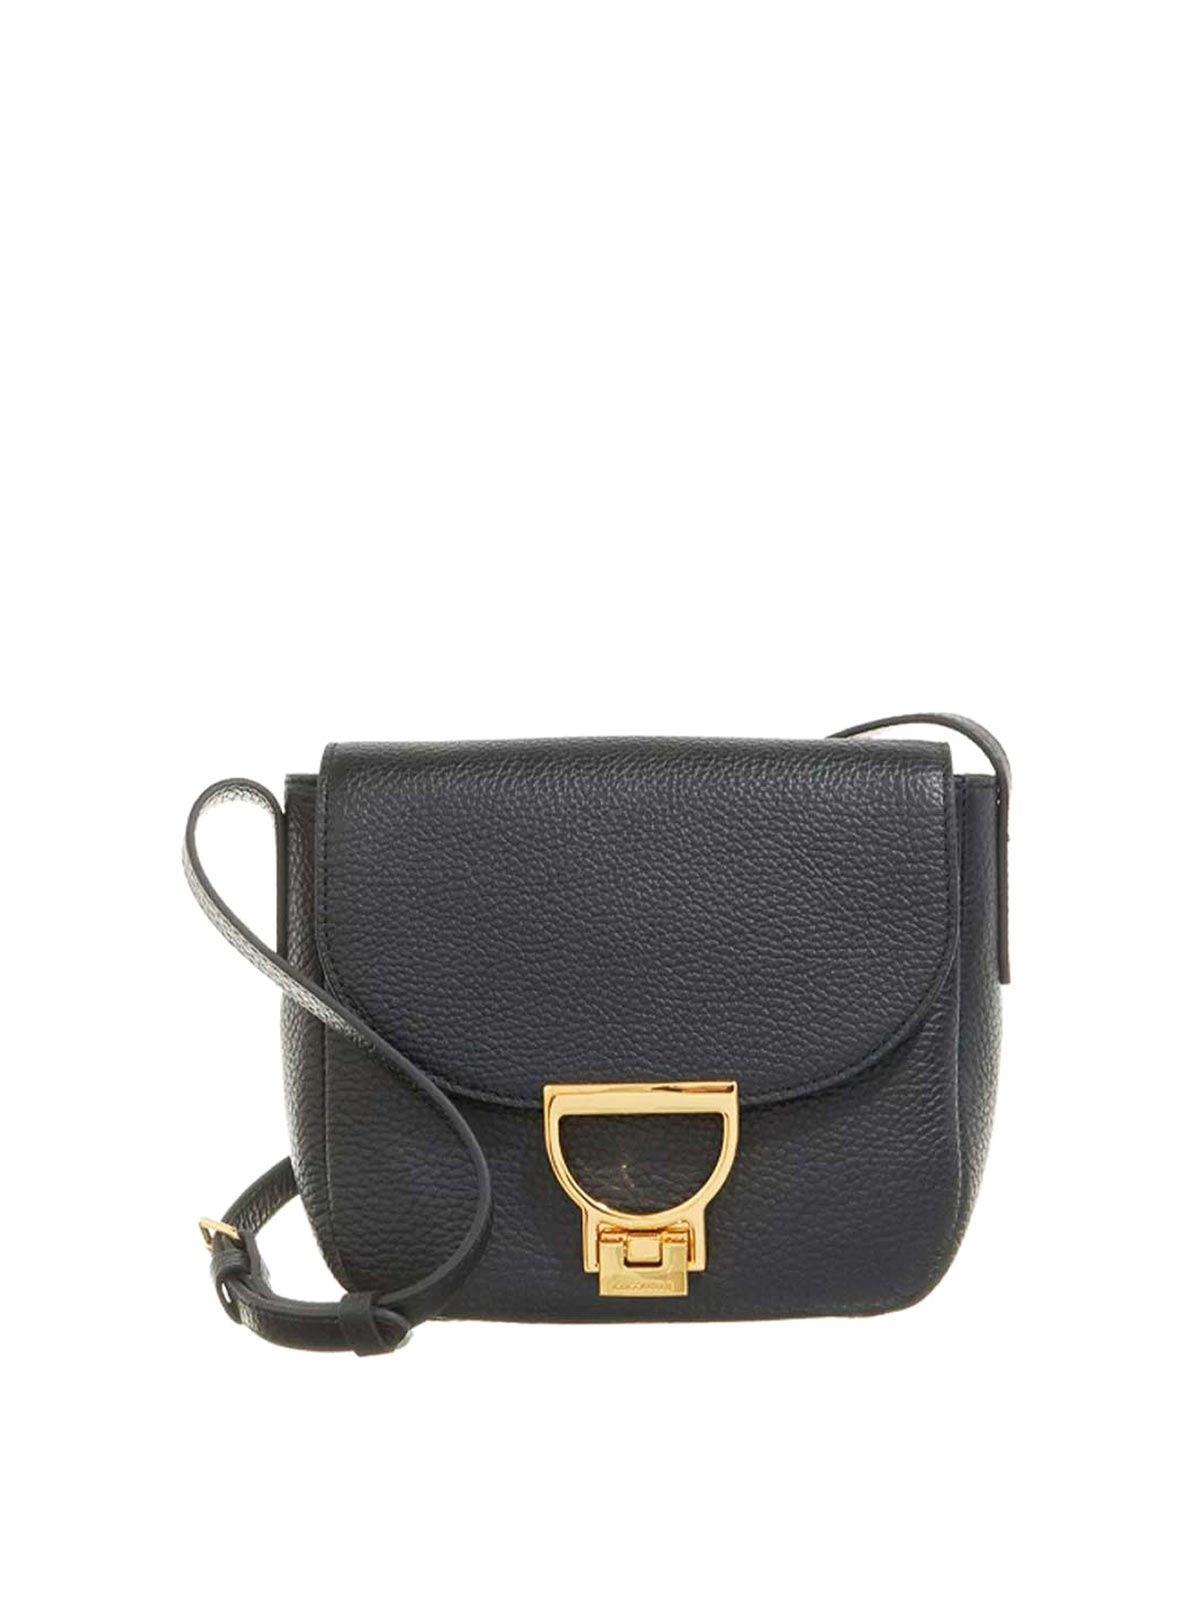 Coccinelle Arlettis Bag With Shoulder Strap In Black